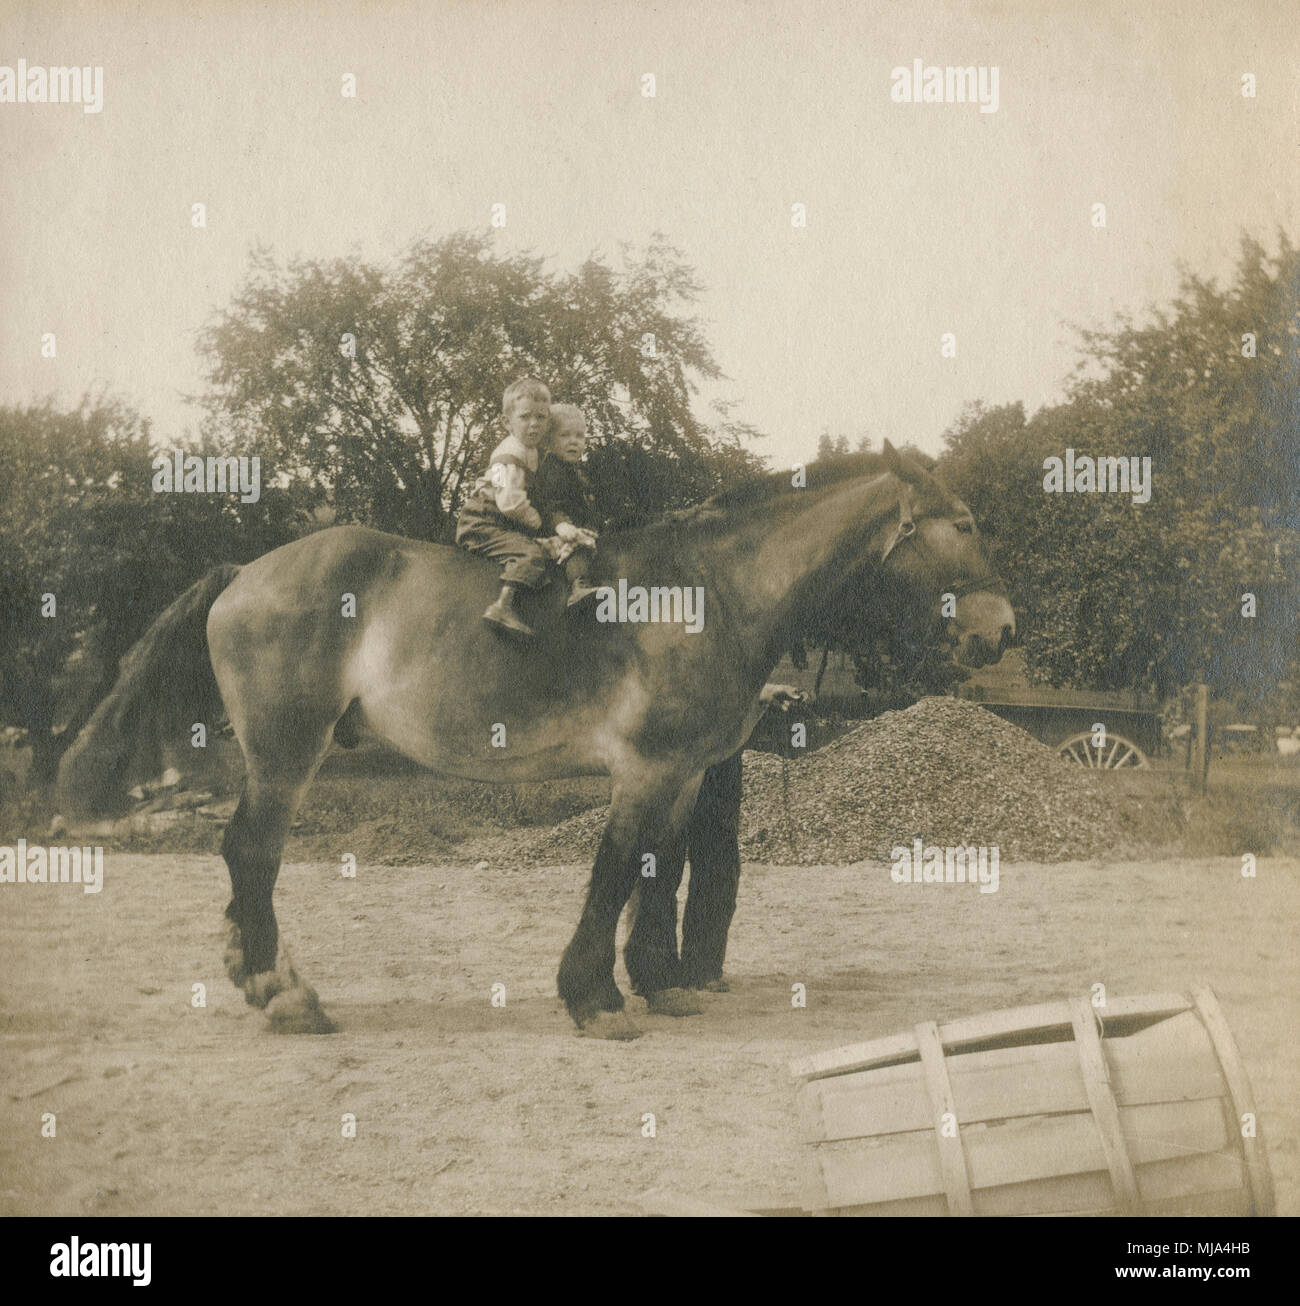 Antique c1905 fotografia, due giovani ragazzi a cavallo. Posizione sconosciuta, probabilmente la Nuova Inghilterra, Stati Uniti d'America. Fonte: originale stampa fotografica. Foto Stock